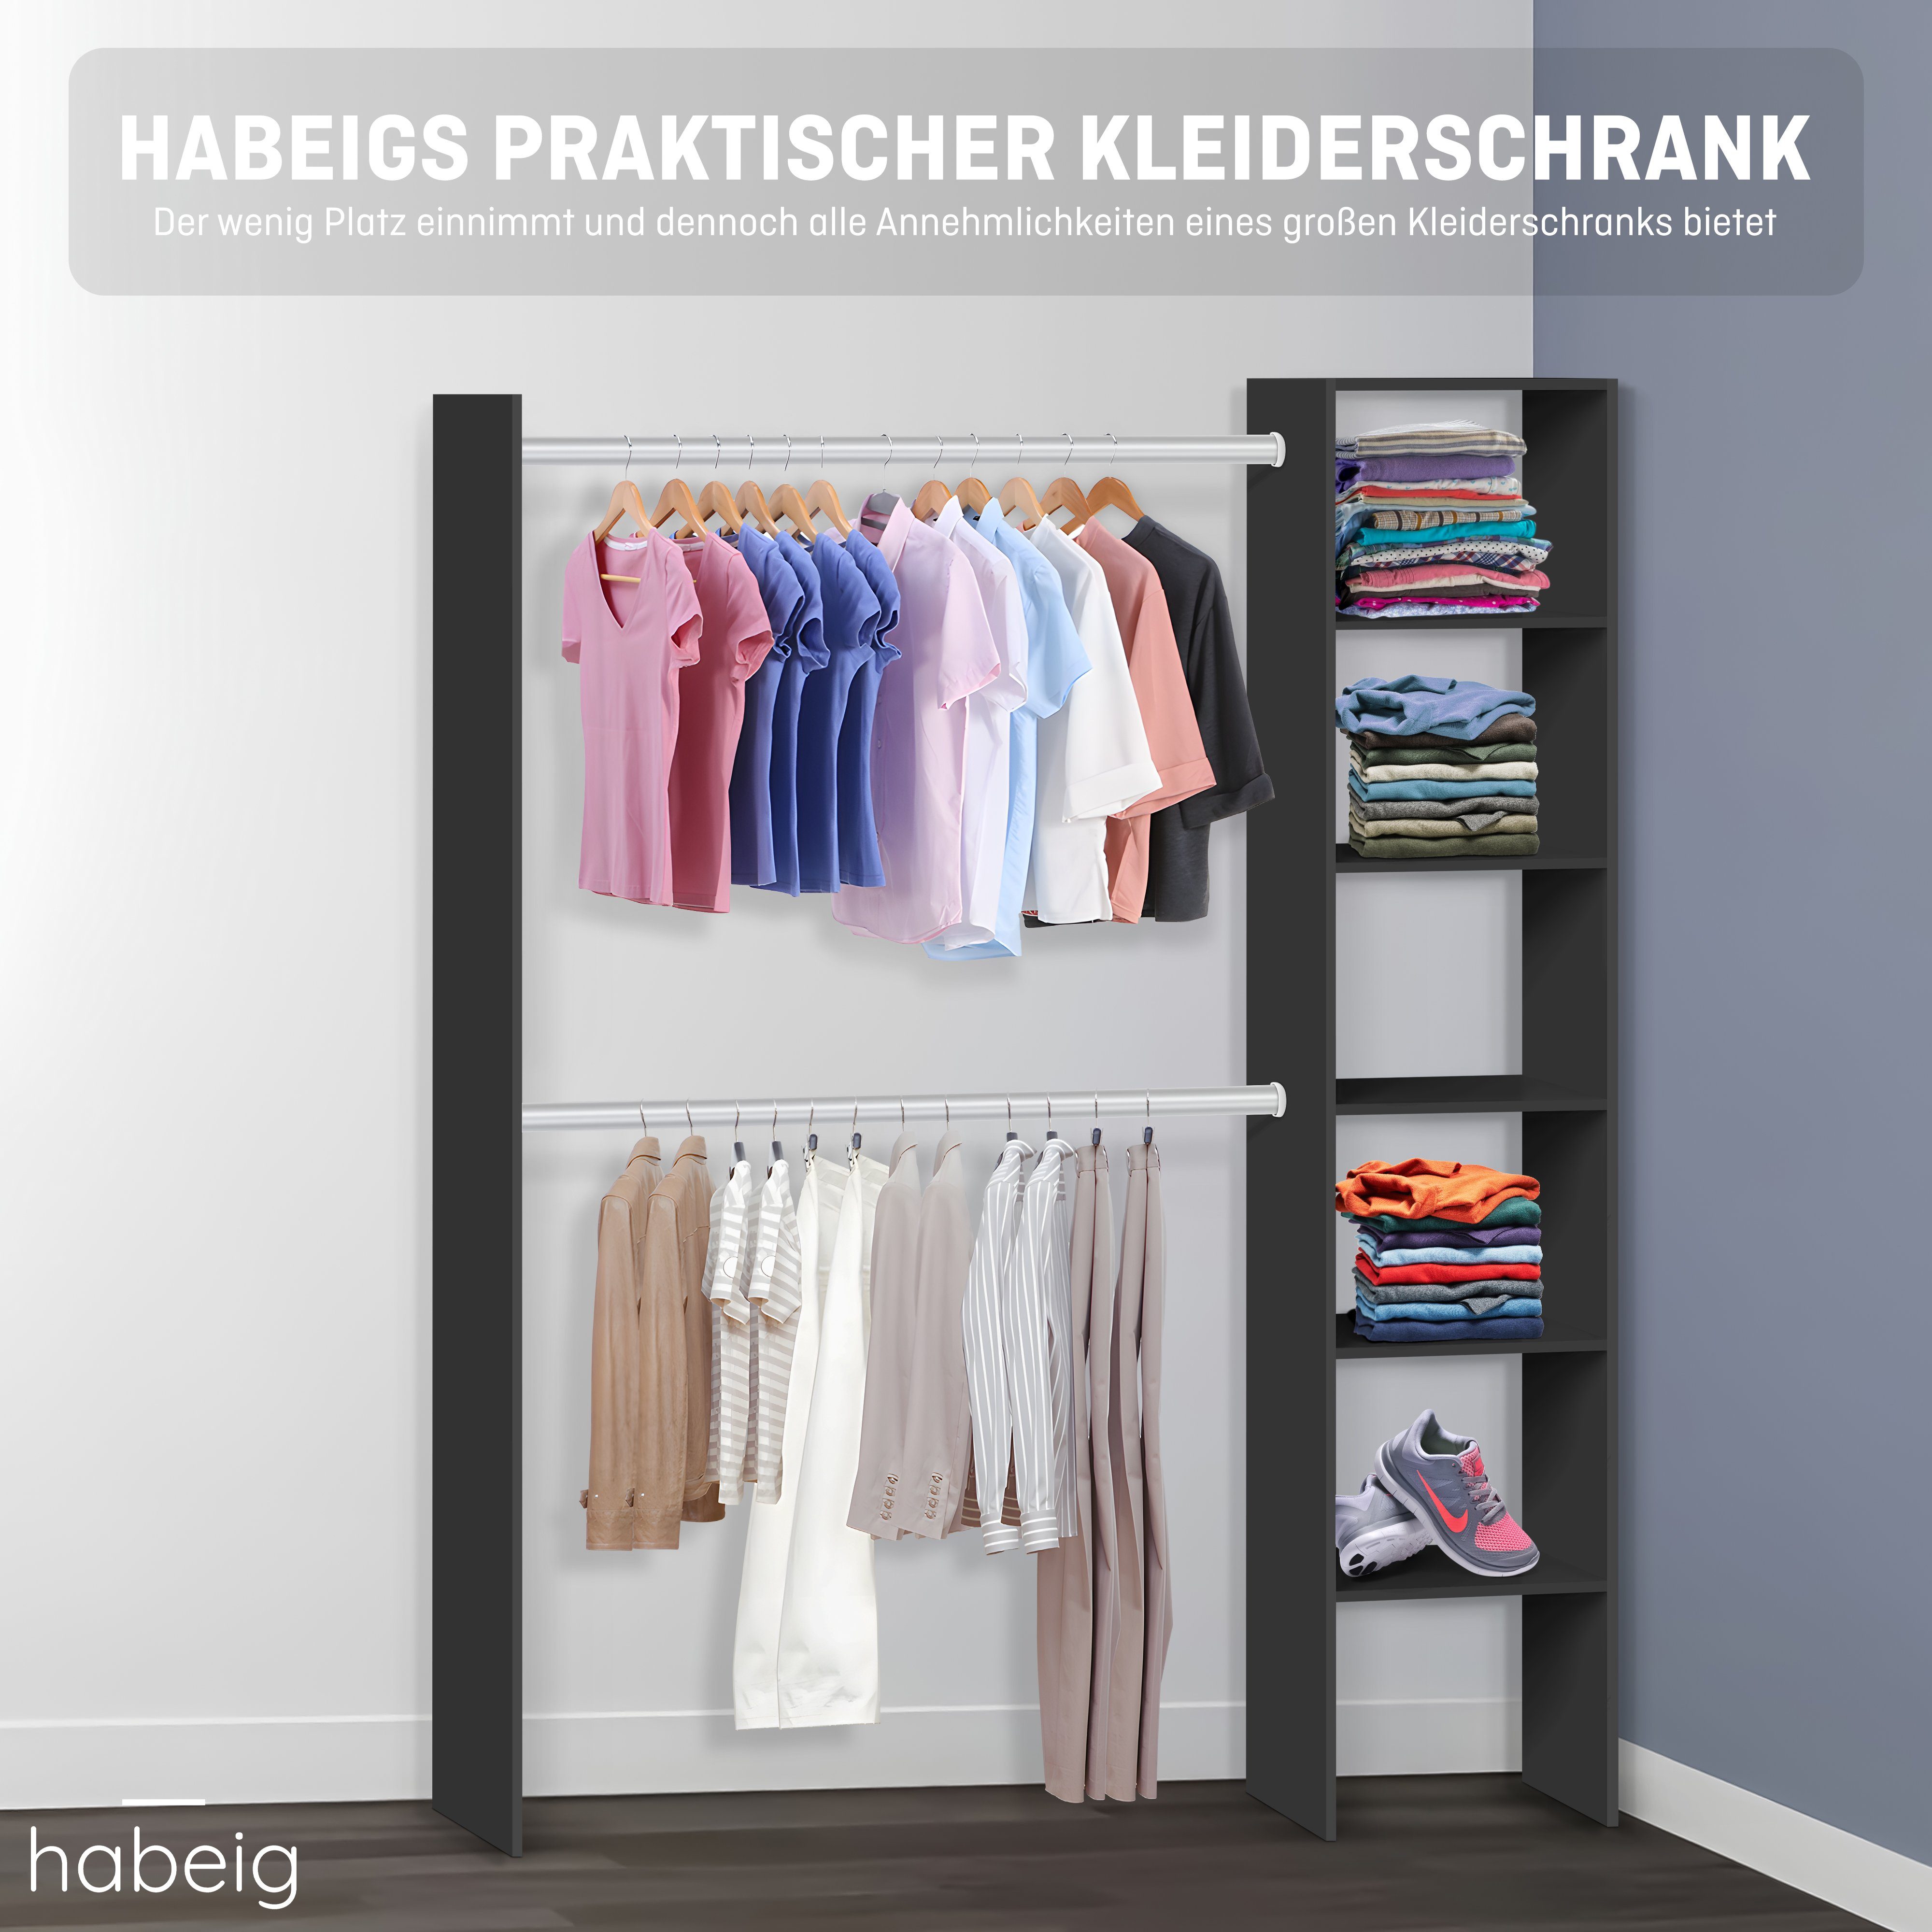 #6000 Schrank habeig Kleiderschrank BEGEHBAR KLEIDERSCHRANK (Schwarz)